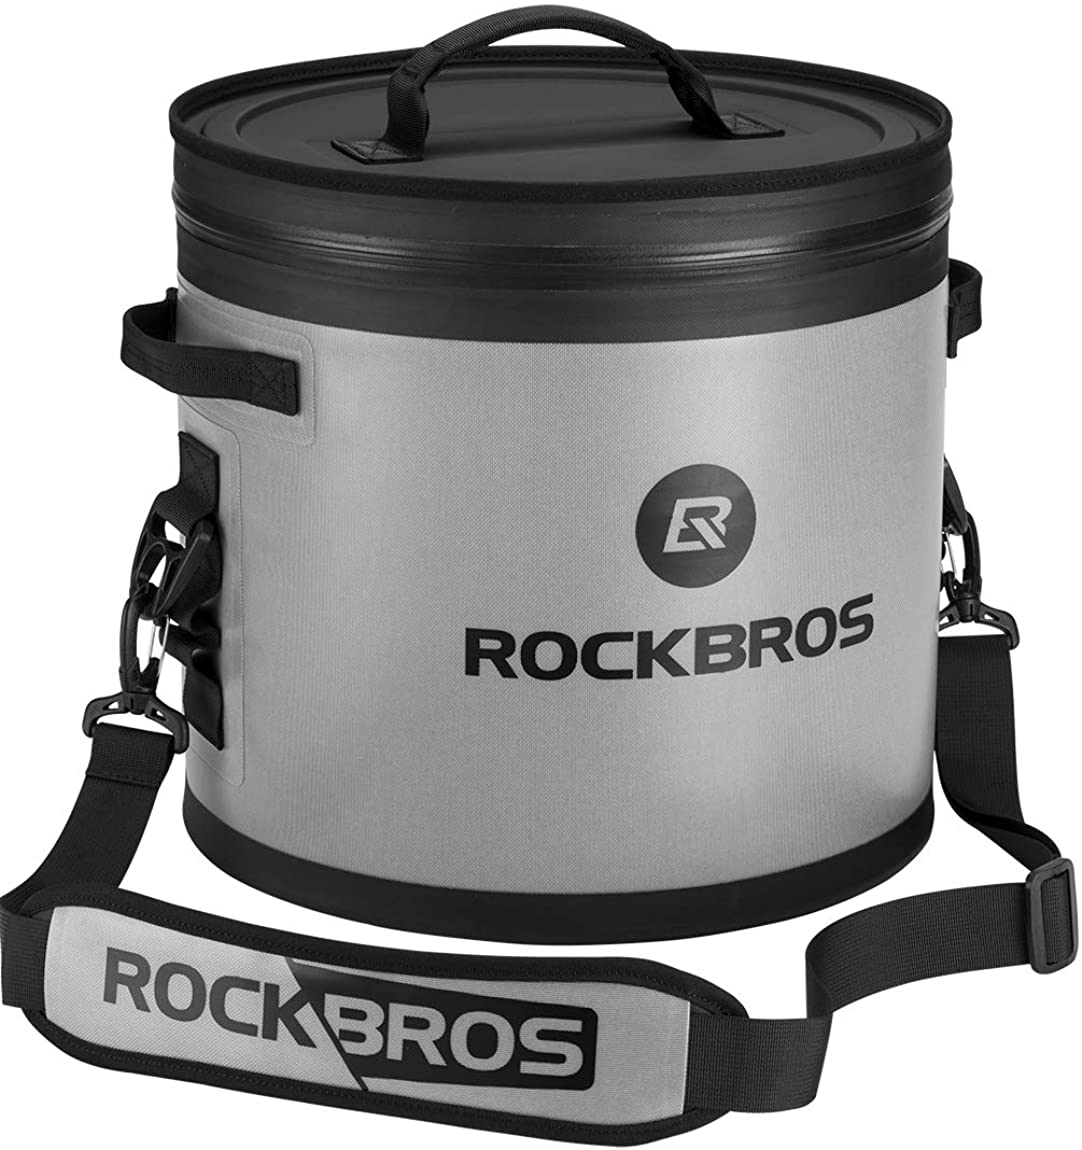 ROCKBROS Soft Cooler 100% Leak-Proof